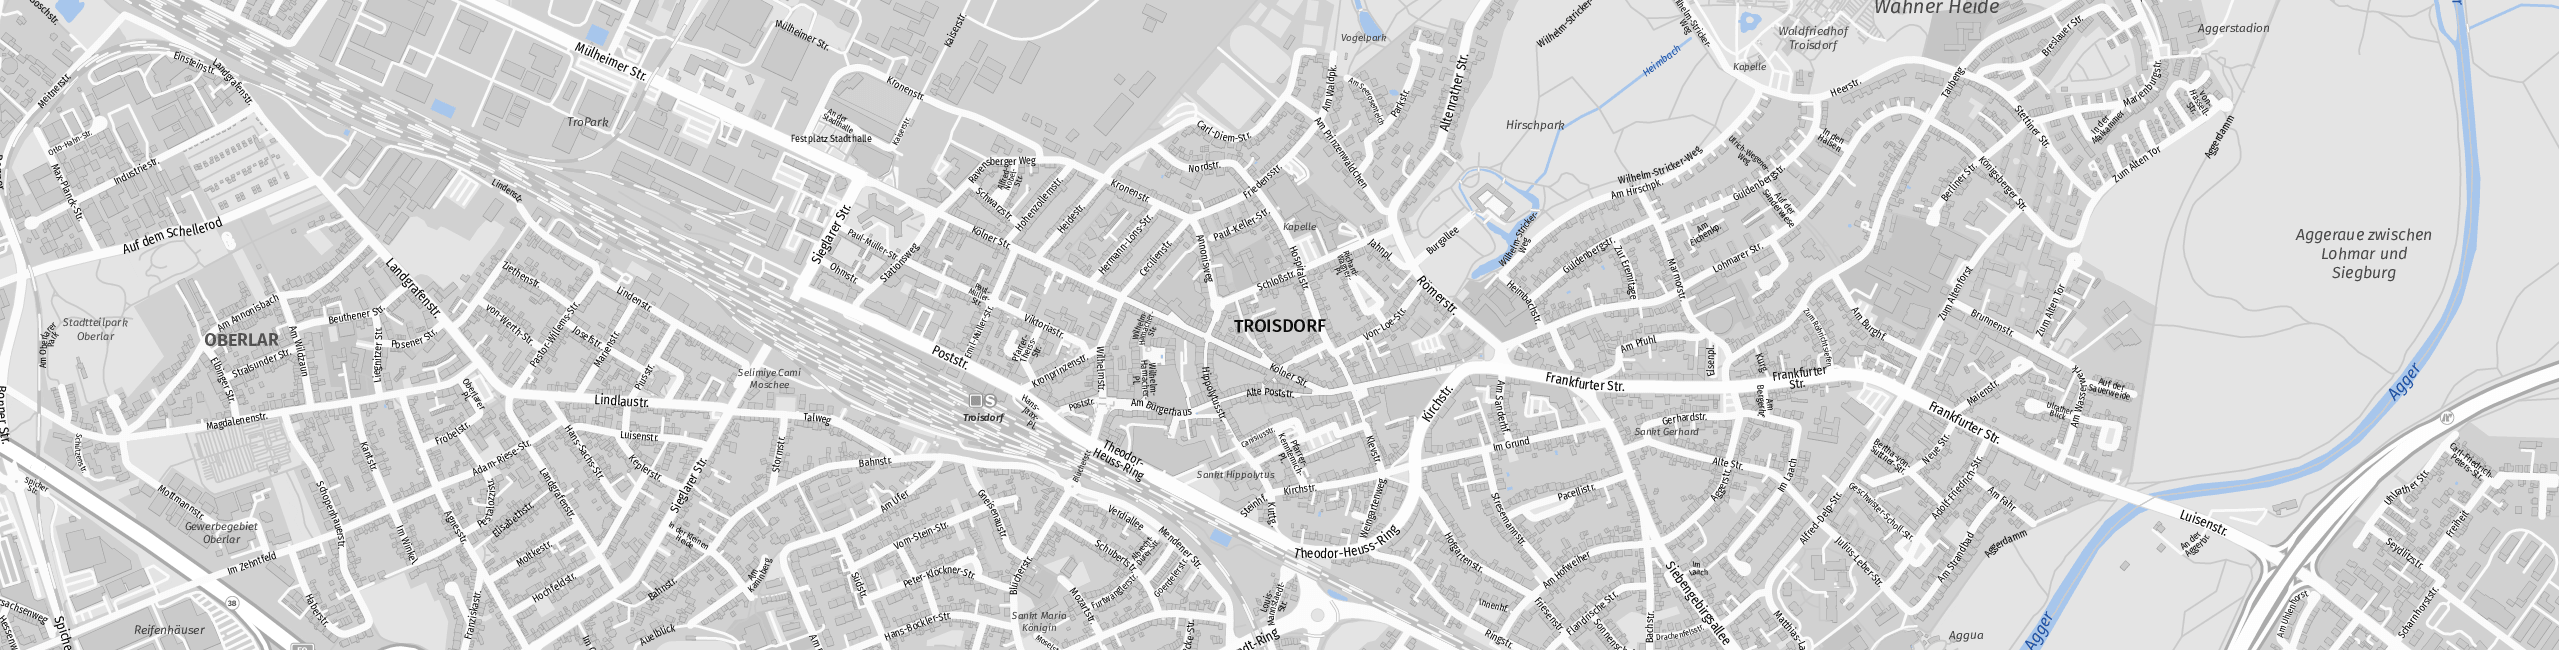 Stadtplan Troisdorf zum Downloaden.